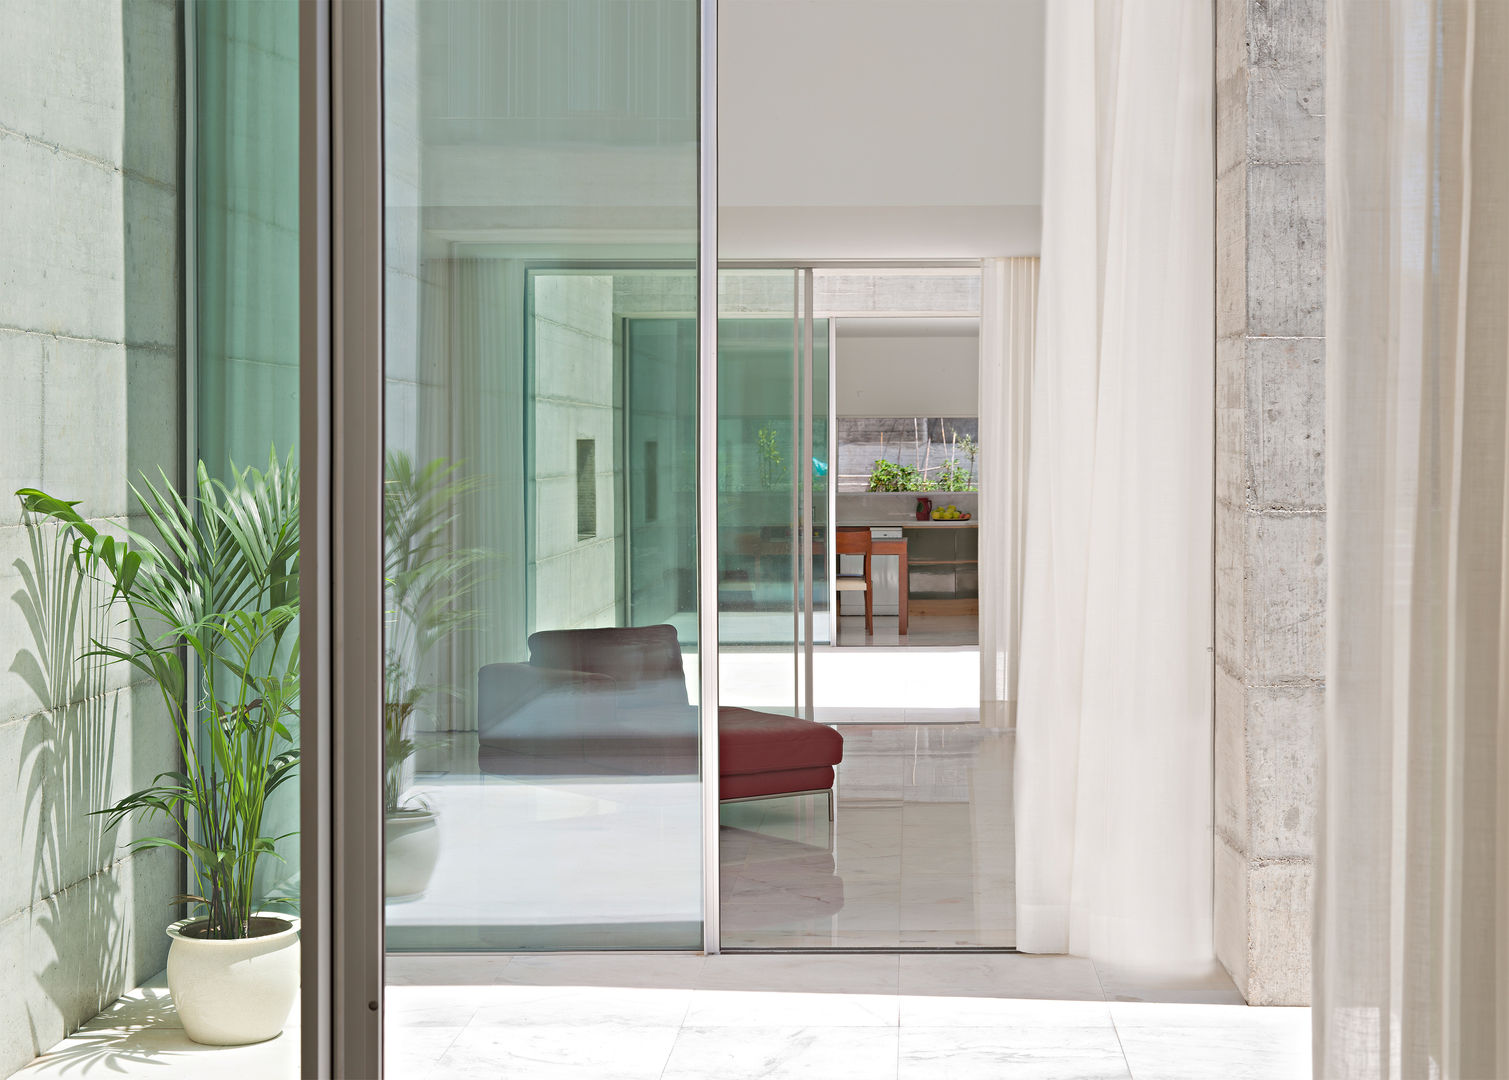 Casa em Moreira, Phyd Arquitectura Phyd Arquitectura Janelas e portas minimalistas